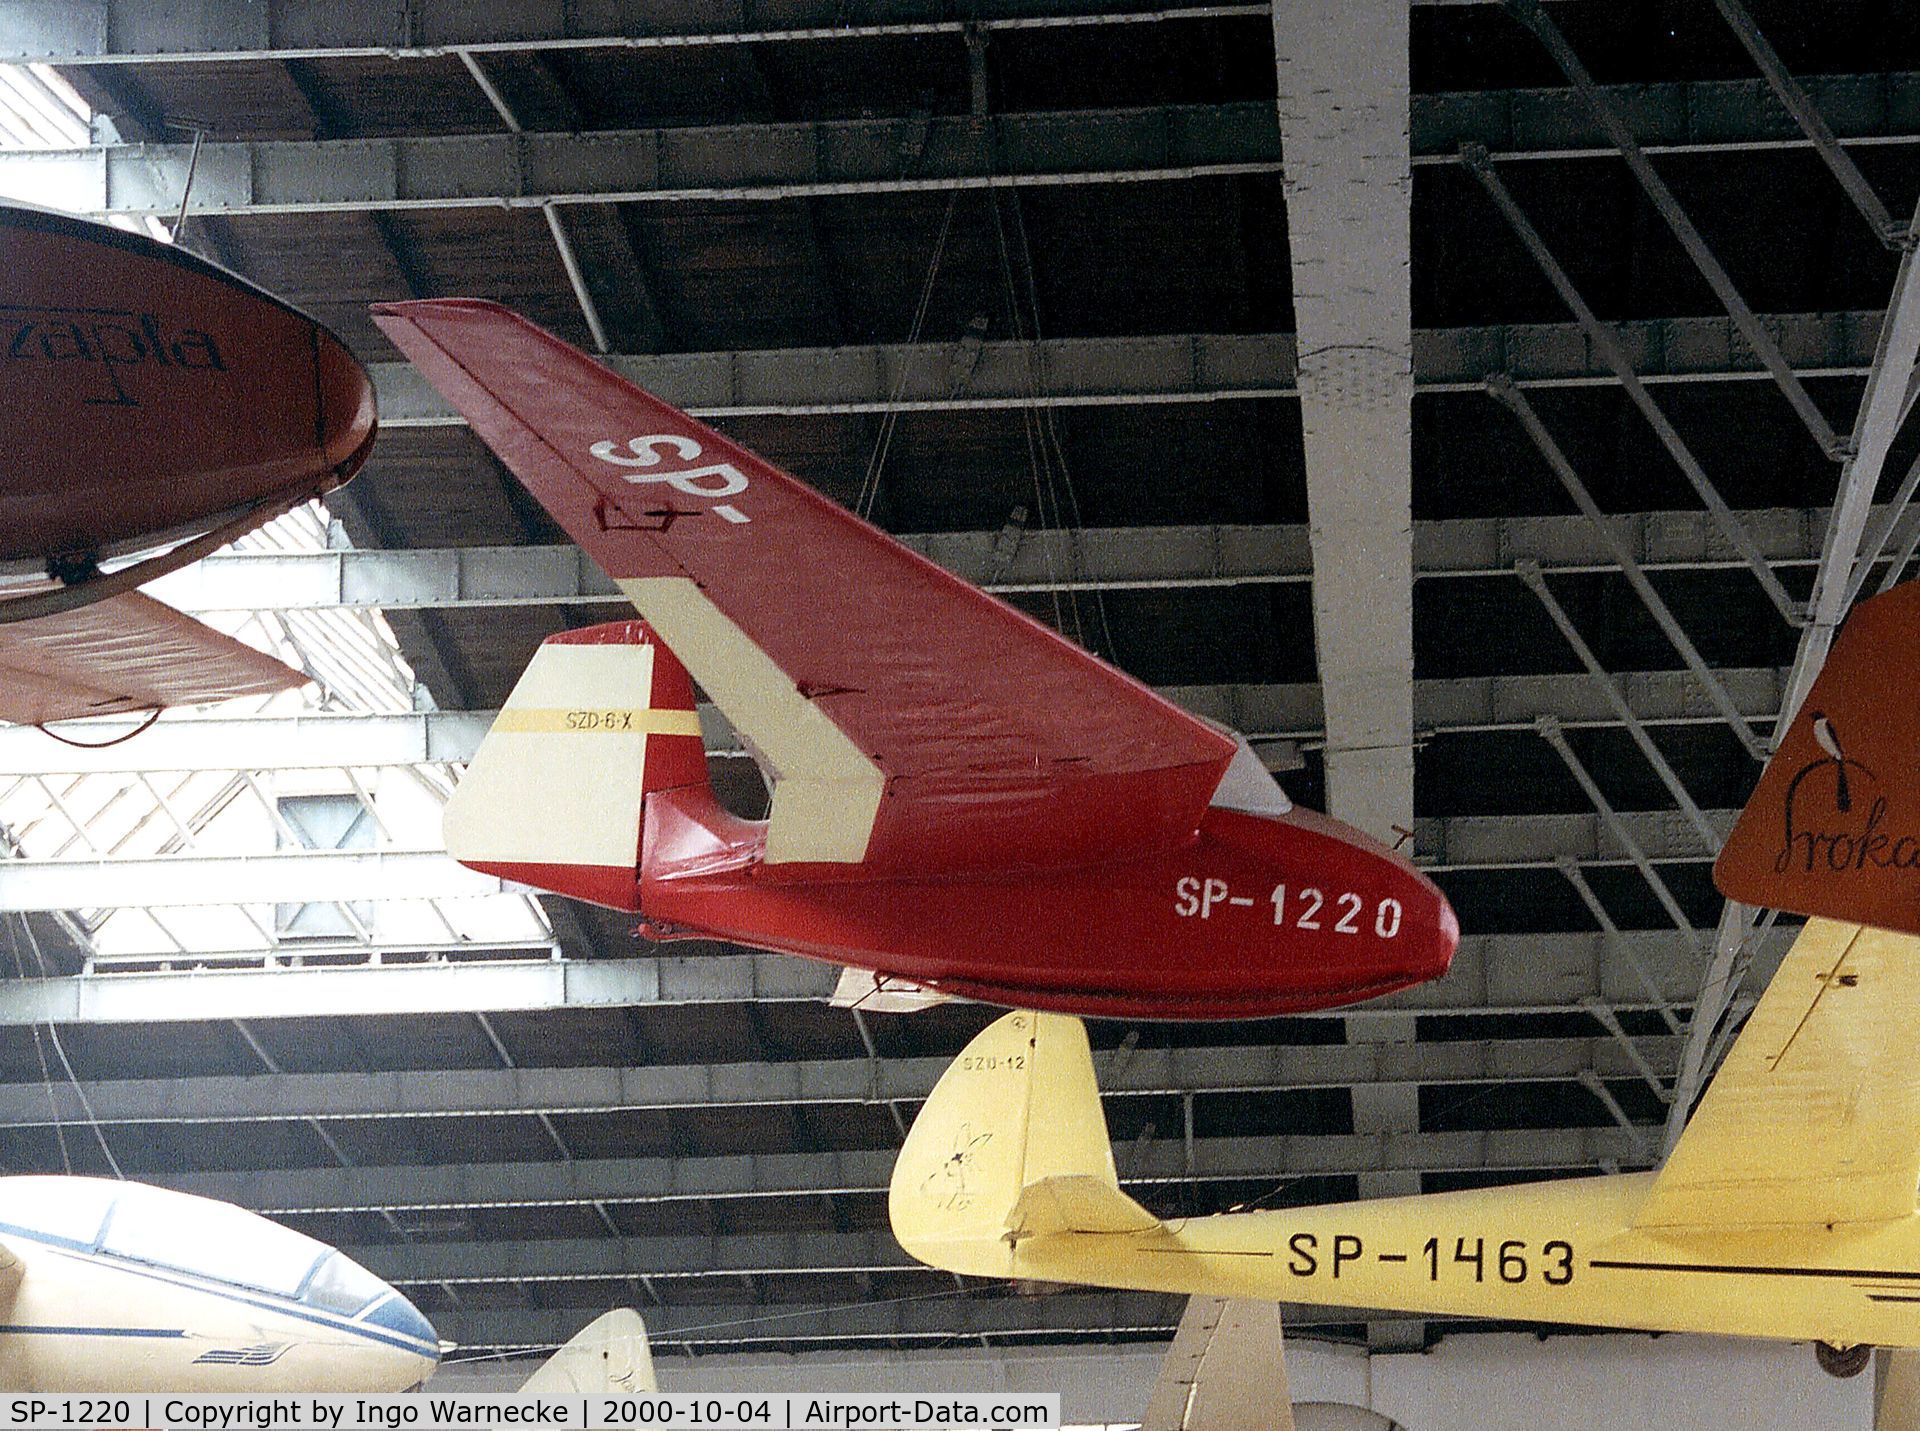 SP-1220, Instytut Szybownictwa IS-6X Nietoperz C/N 069, Instytut Szybownictwa IS-6X Nietoperz at the Muzeum Lotnictwa i Astronautyki, Krakow